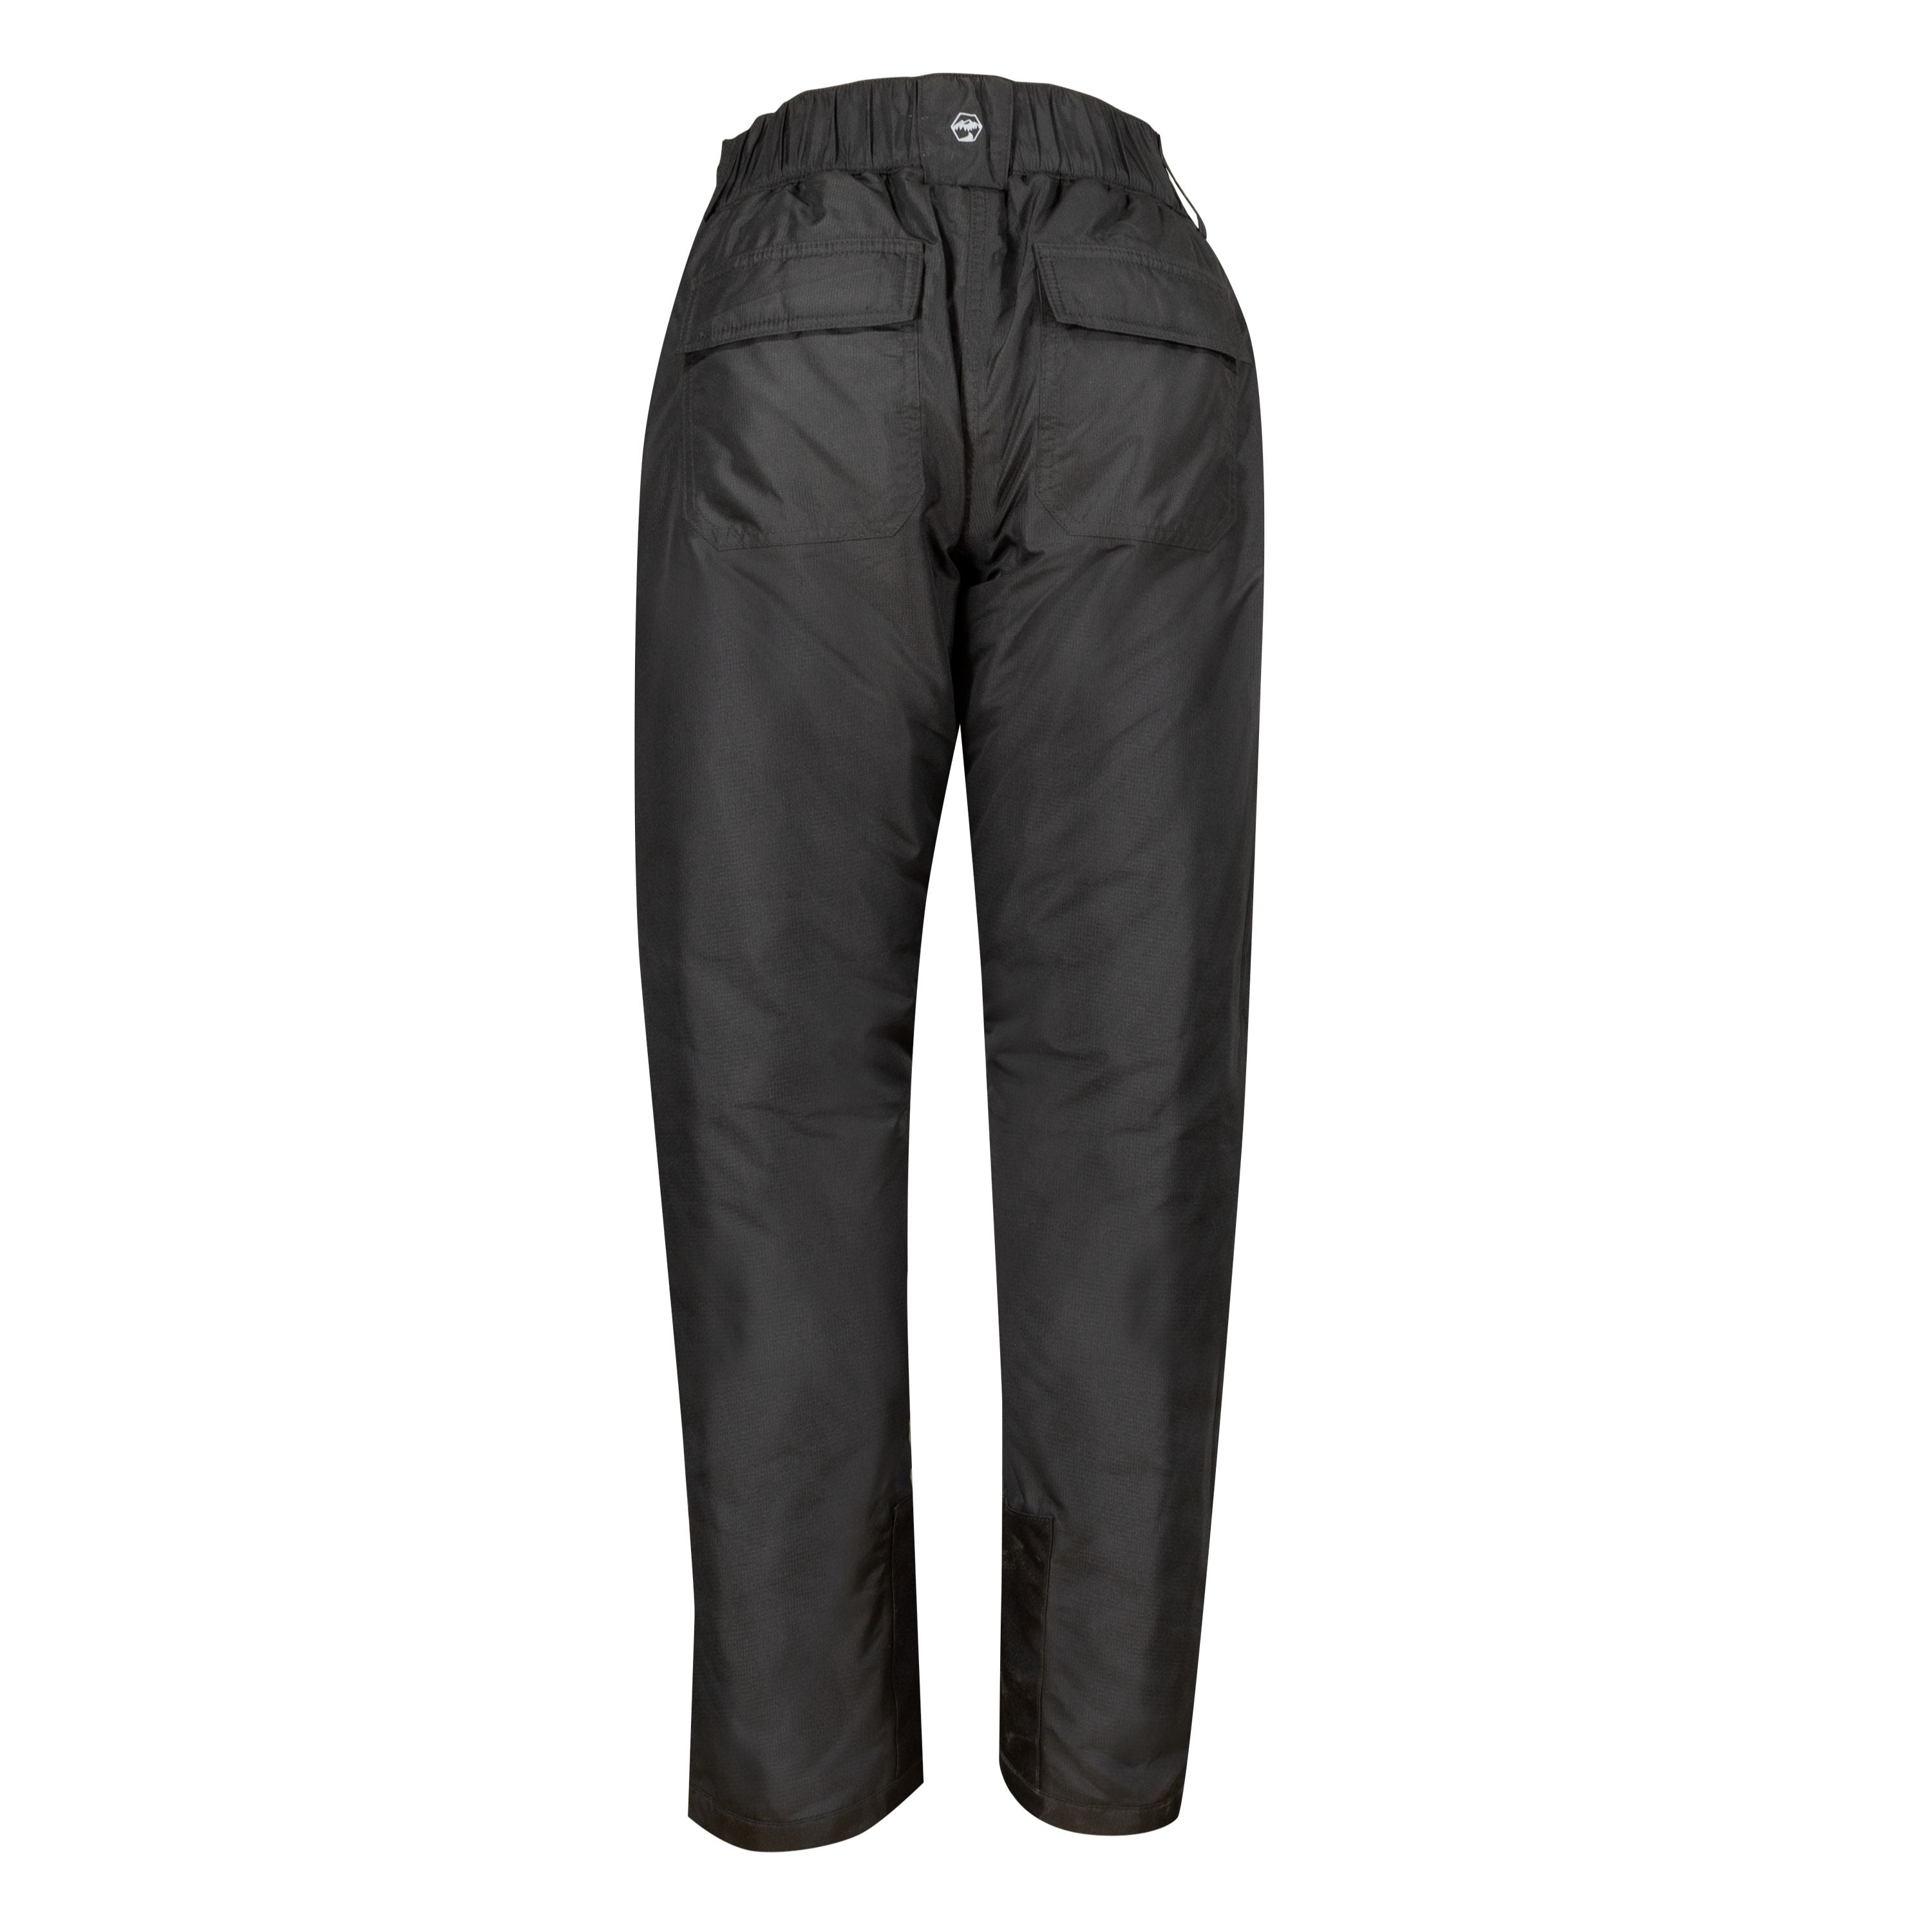 Pantalon d’hiver doublé Gosford - Homme||Gosford Lined winter pants -  Men’s